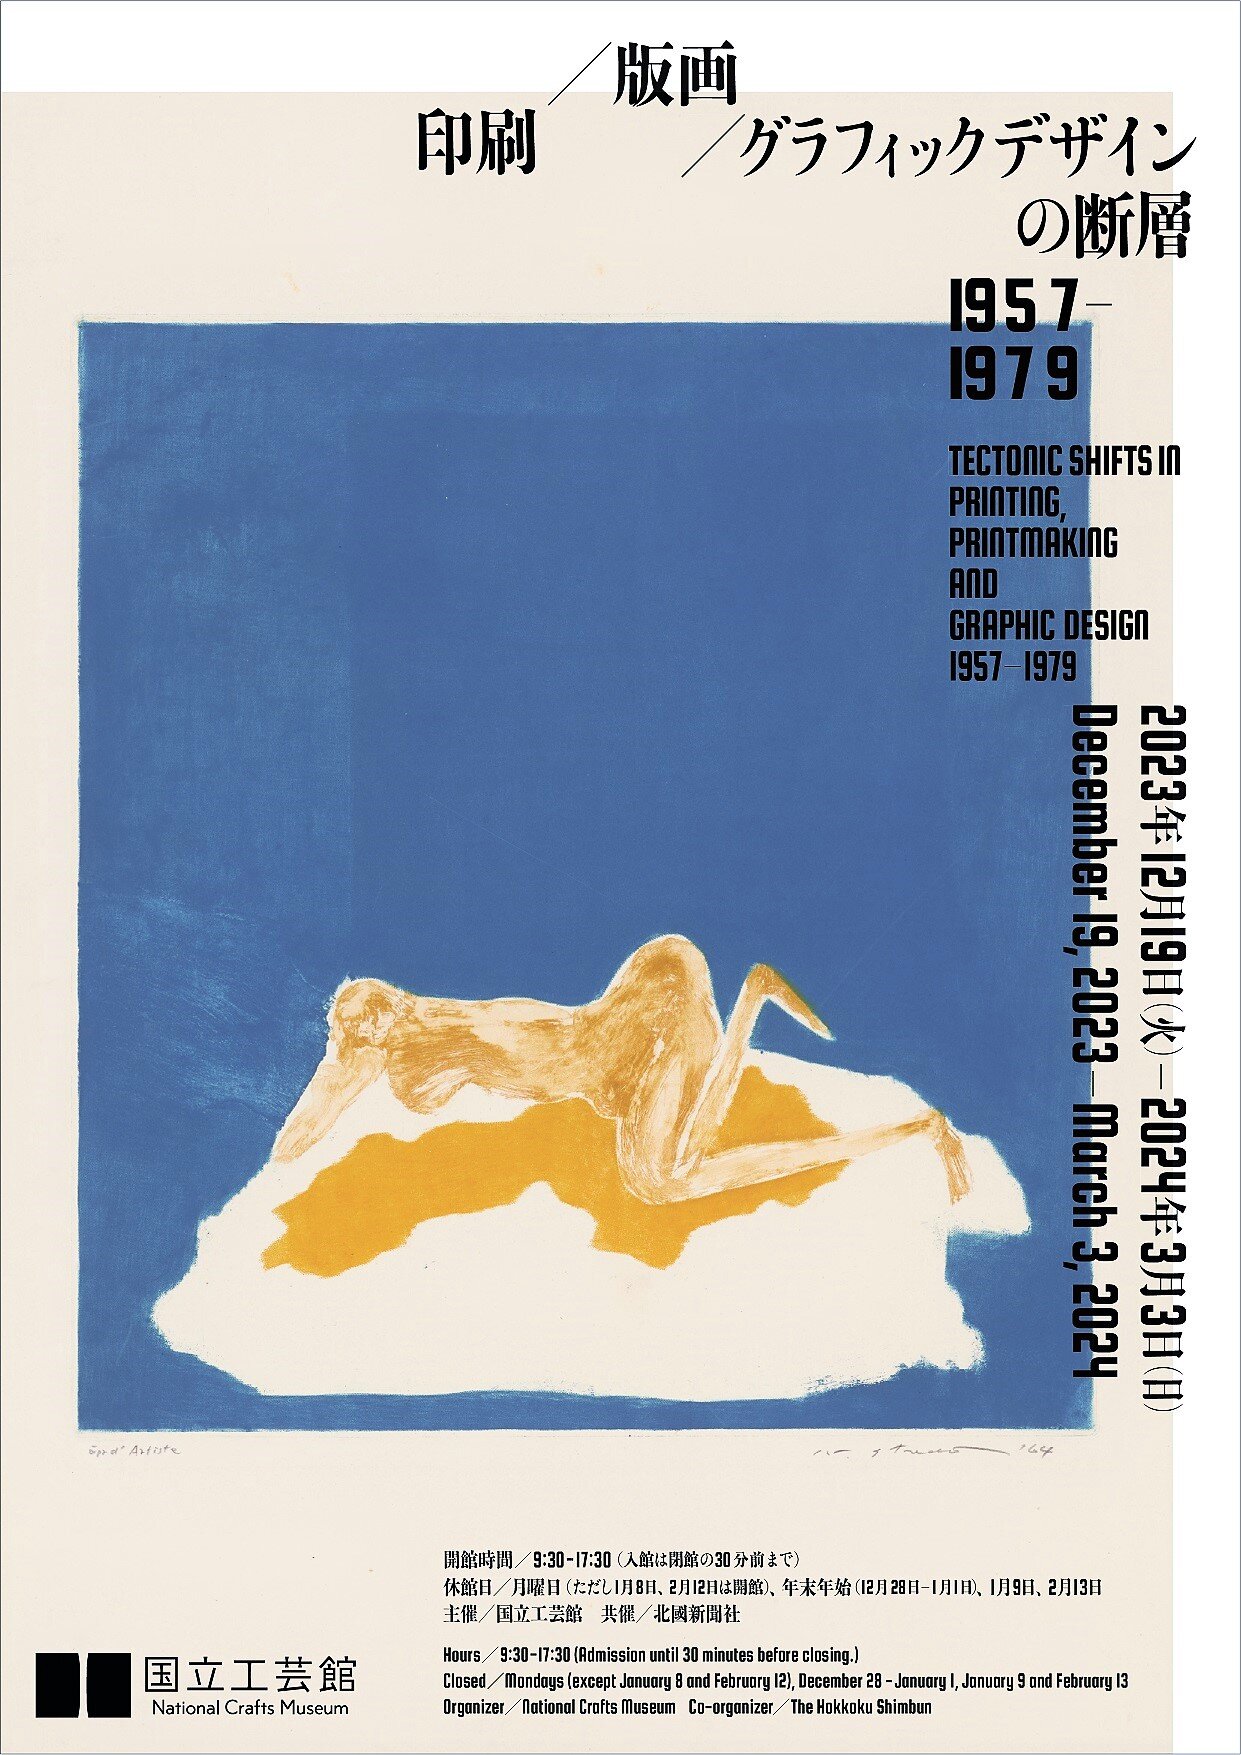 会場：国立工芸館 | 印刷／版画／グラフィックデザインの断層 1957-1979

